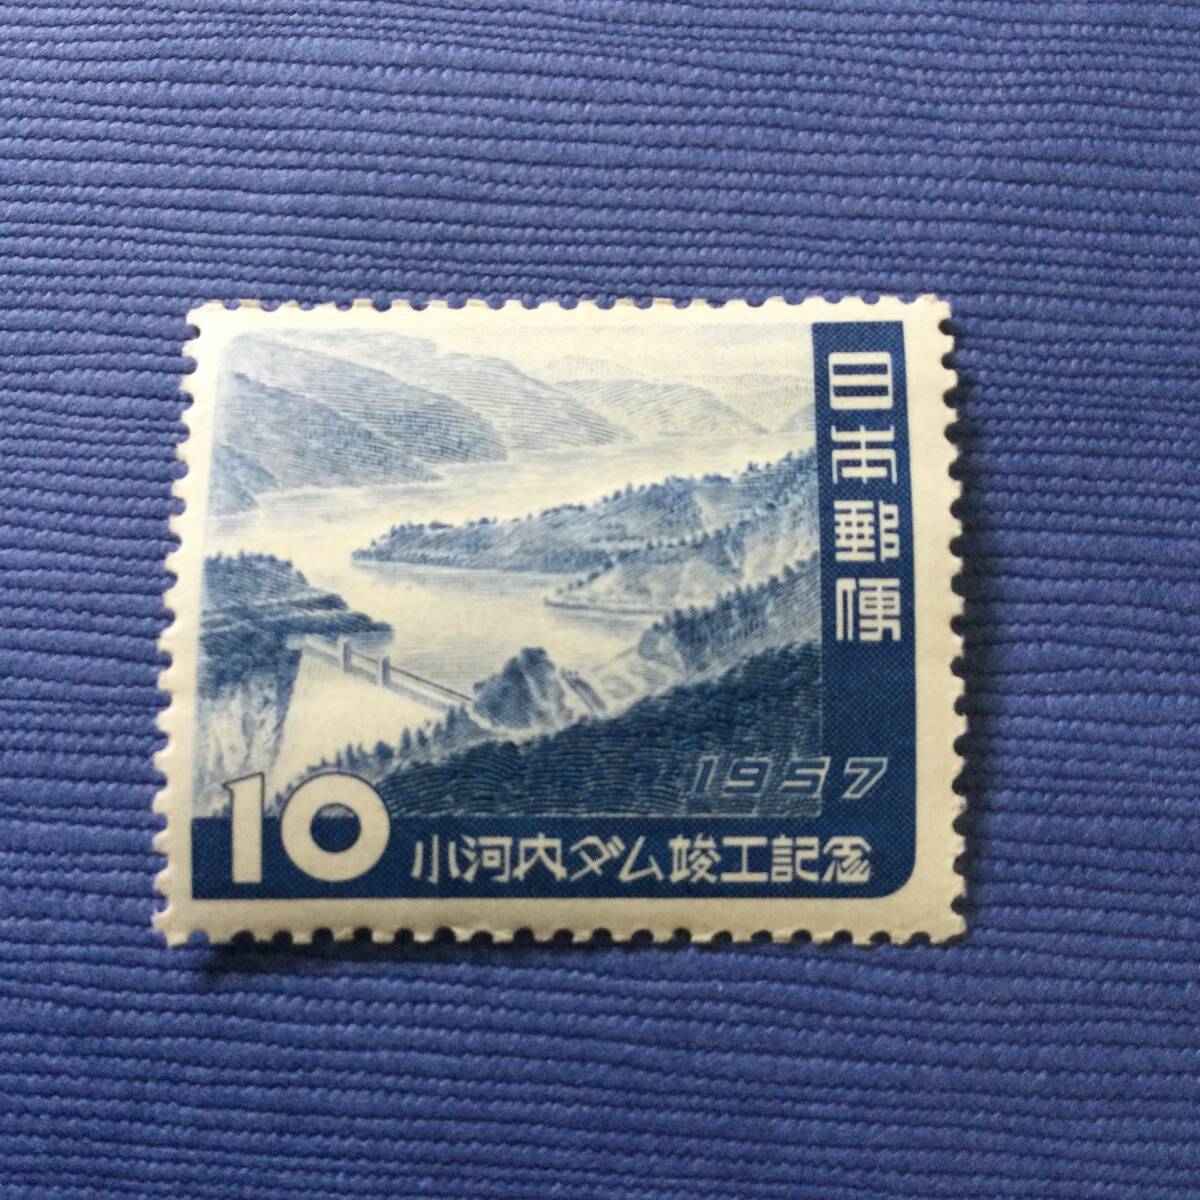 小河内ダム竣工記念切手 1957年 10円の画像1